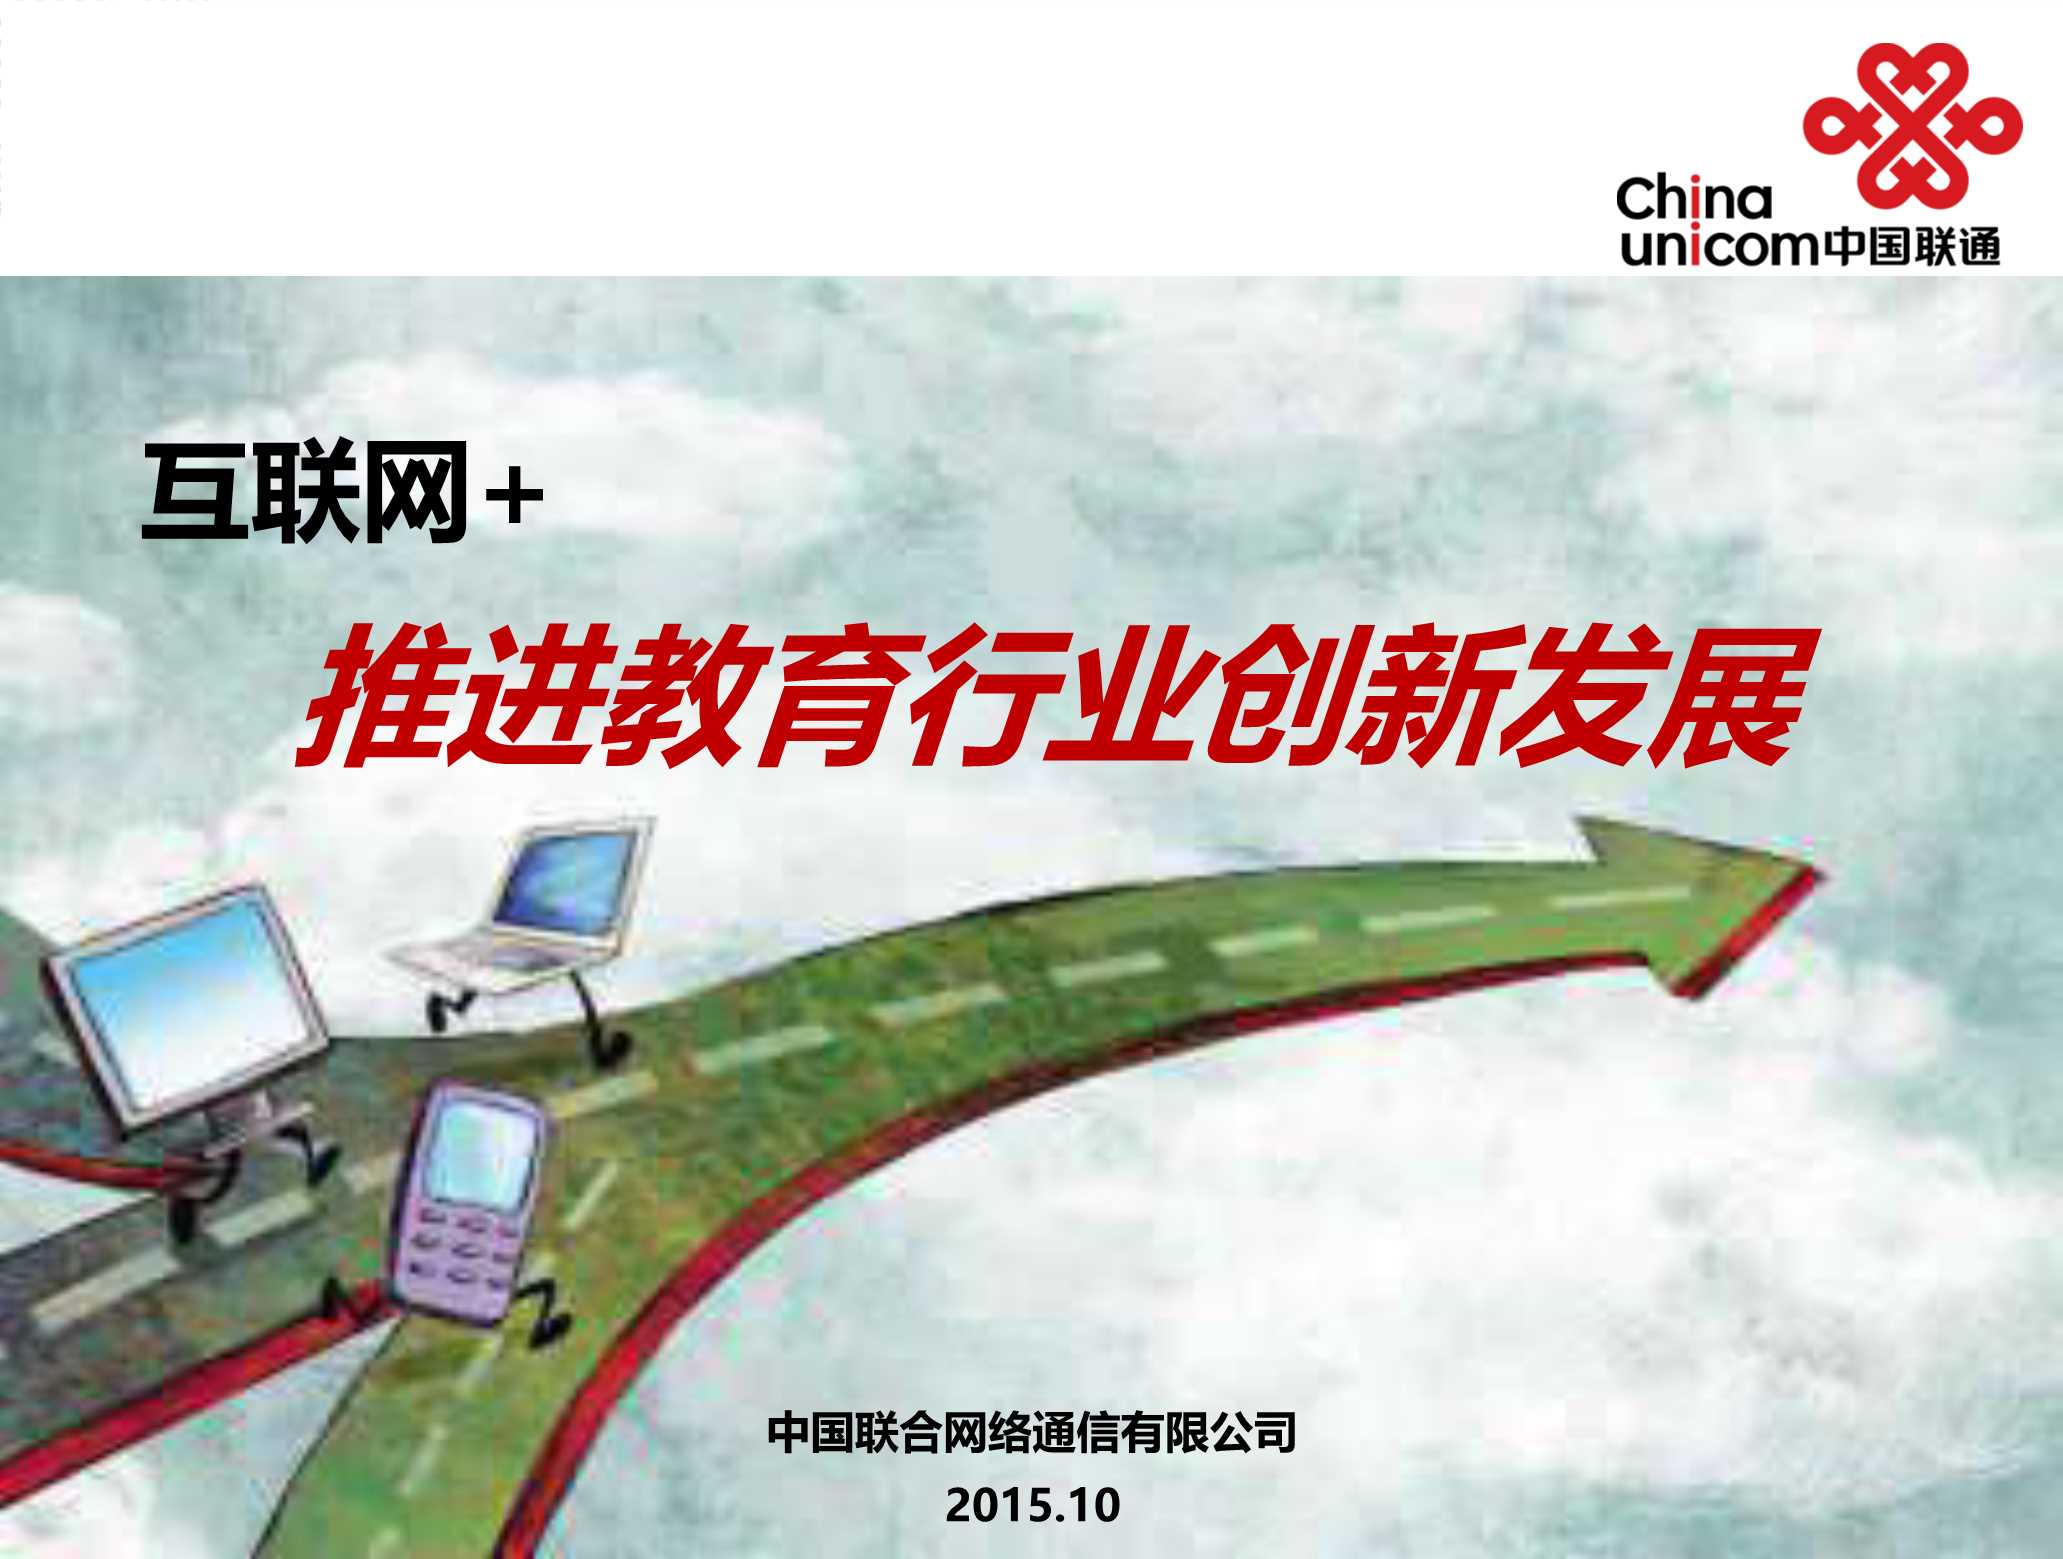 中国联通-互联网 推进教育行业创新发展-2015.10-19页